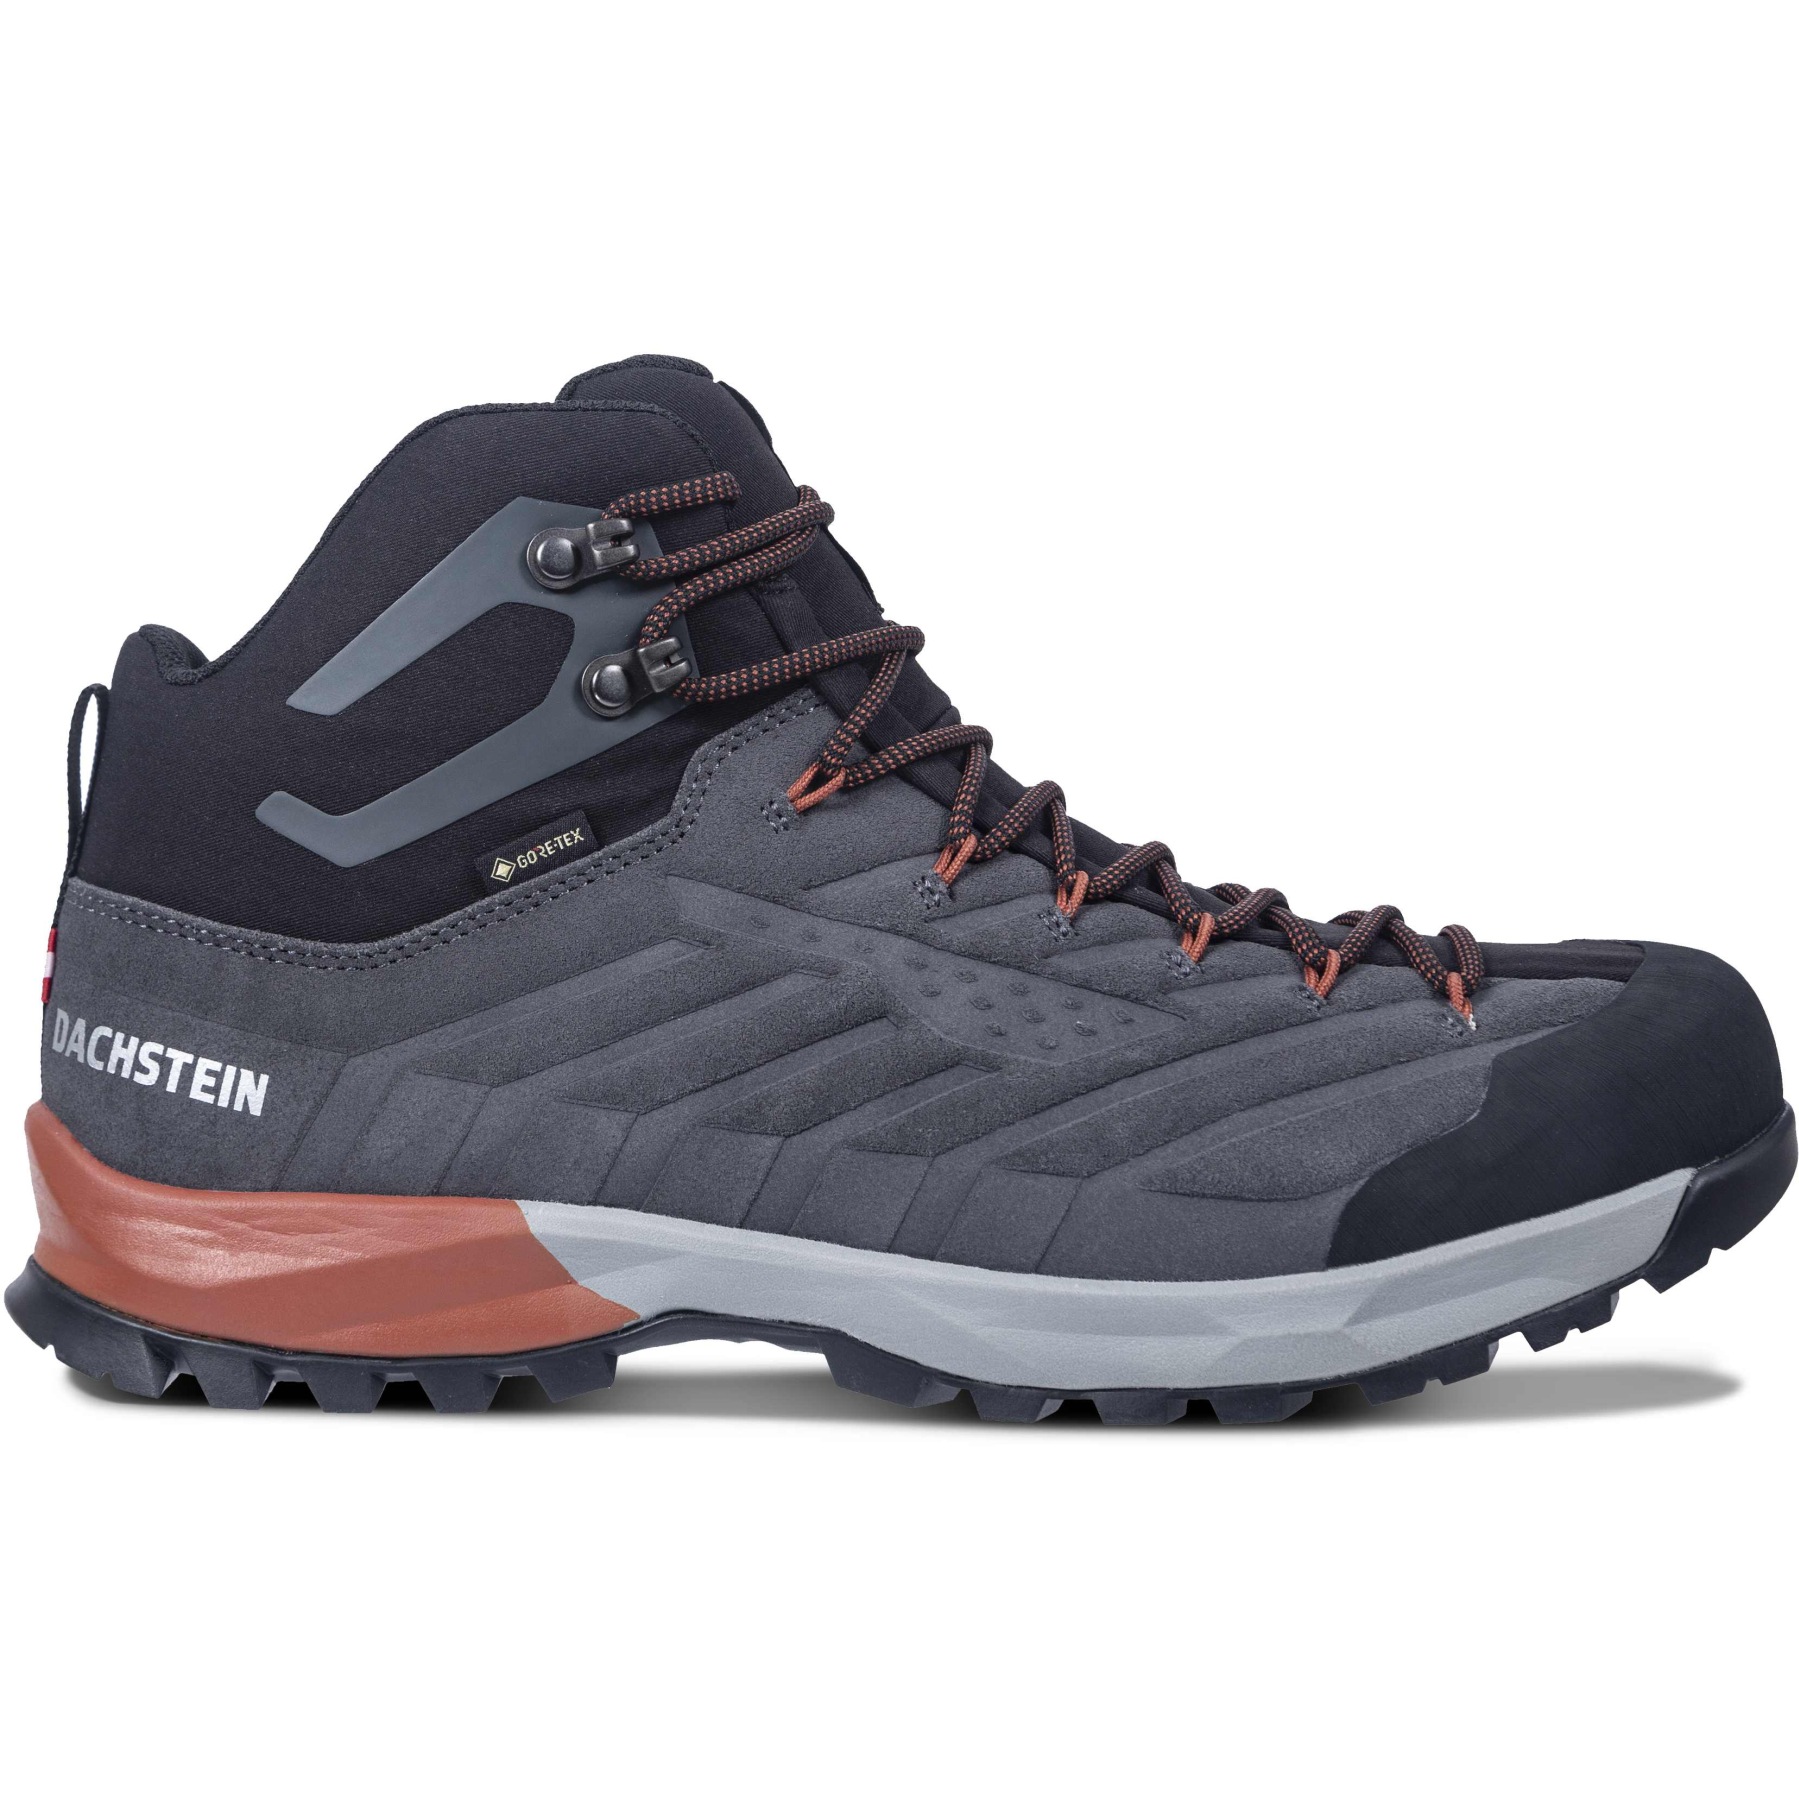 Productfoto van Dachstein SF-21 MC GTX Men&#039;s Outdoor Shoes - granite